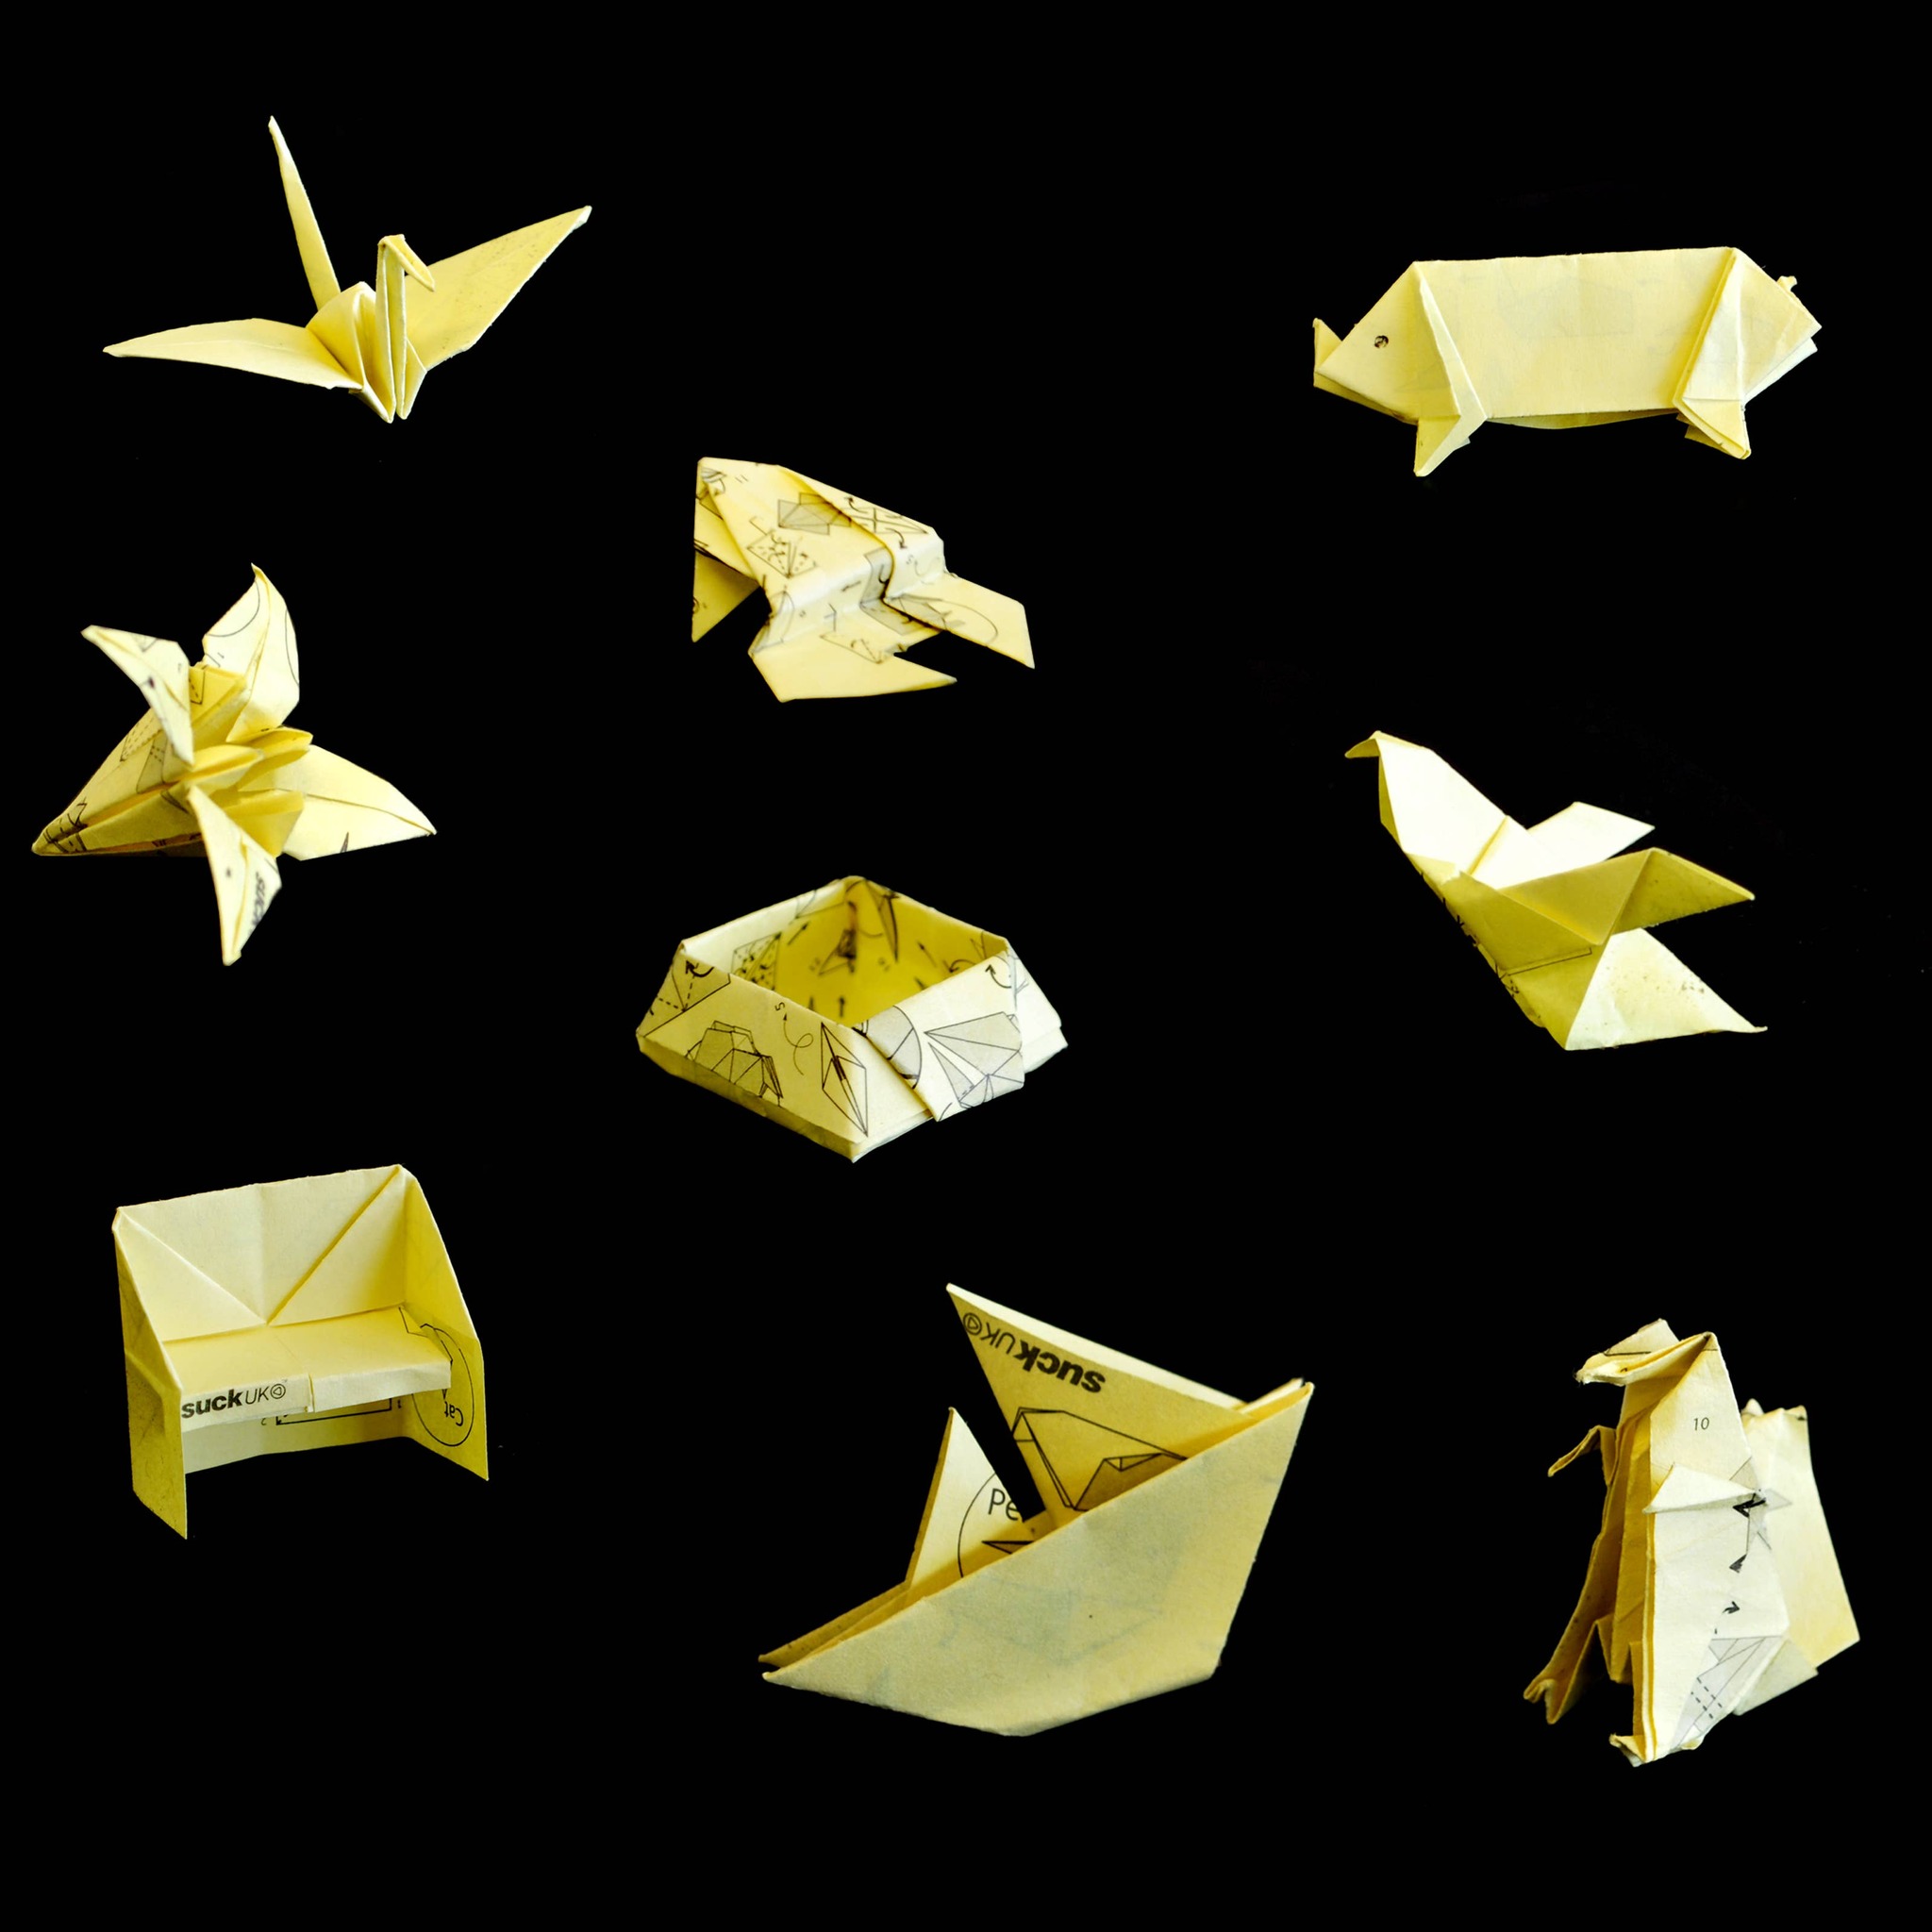 Suck UK - Origami Sticky Note